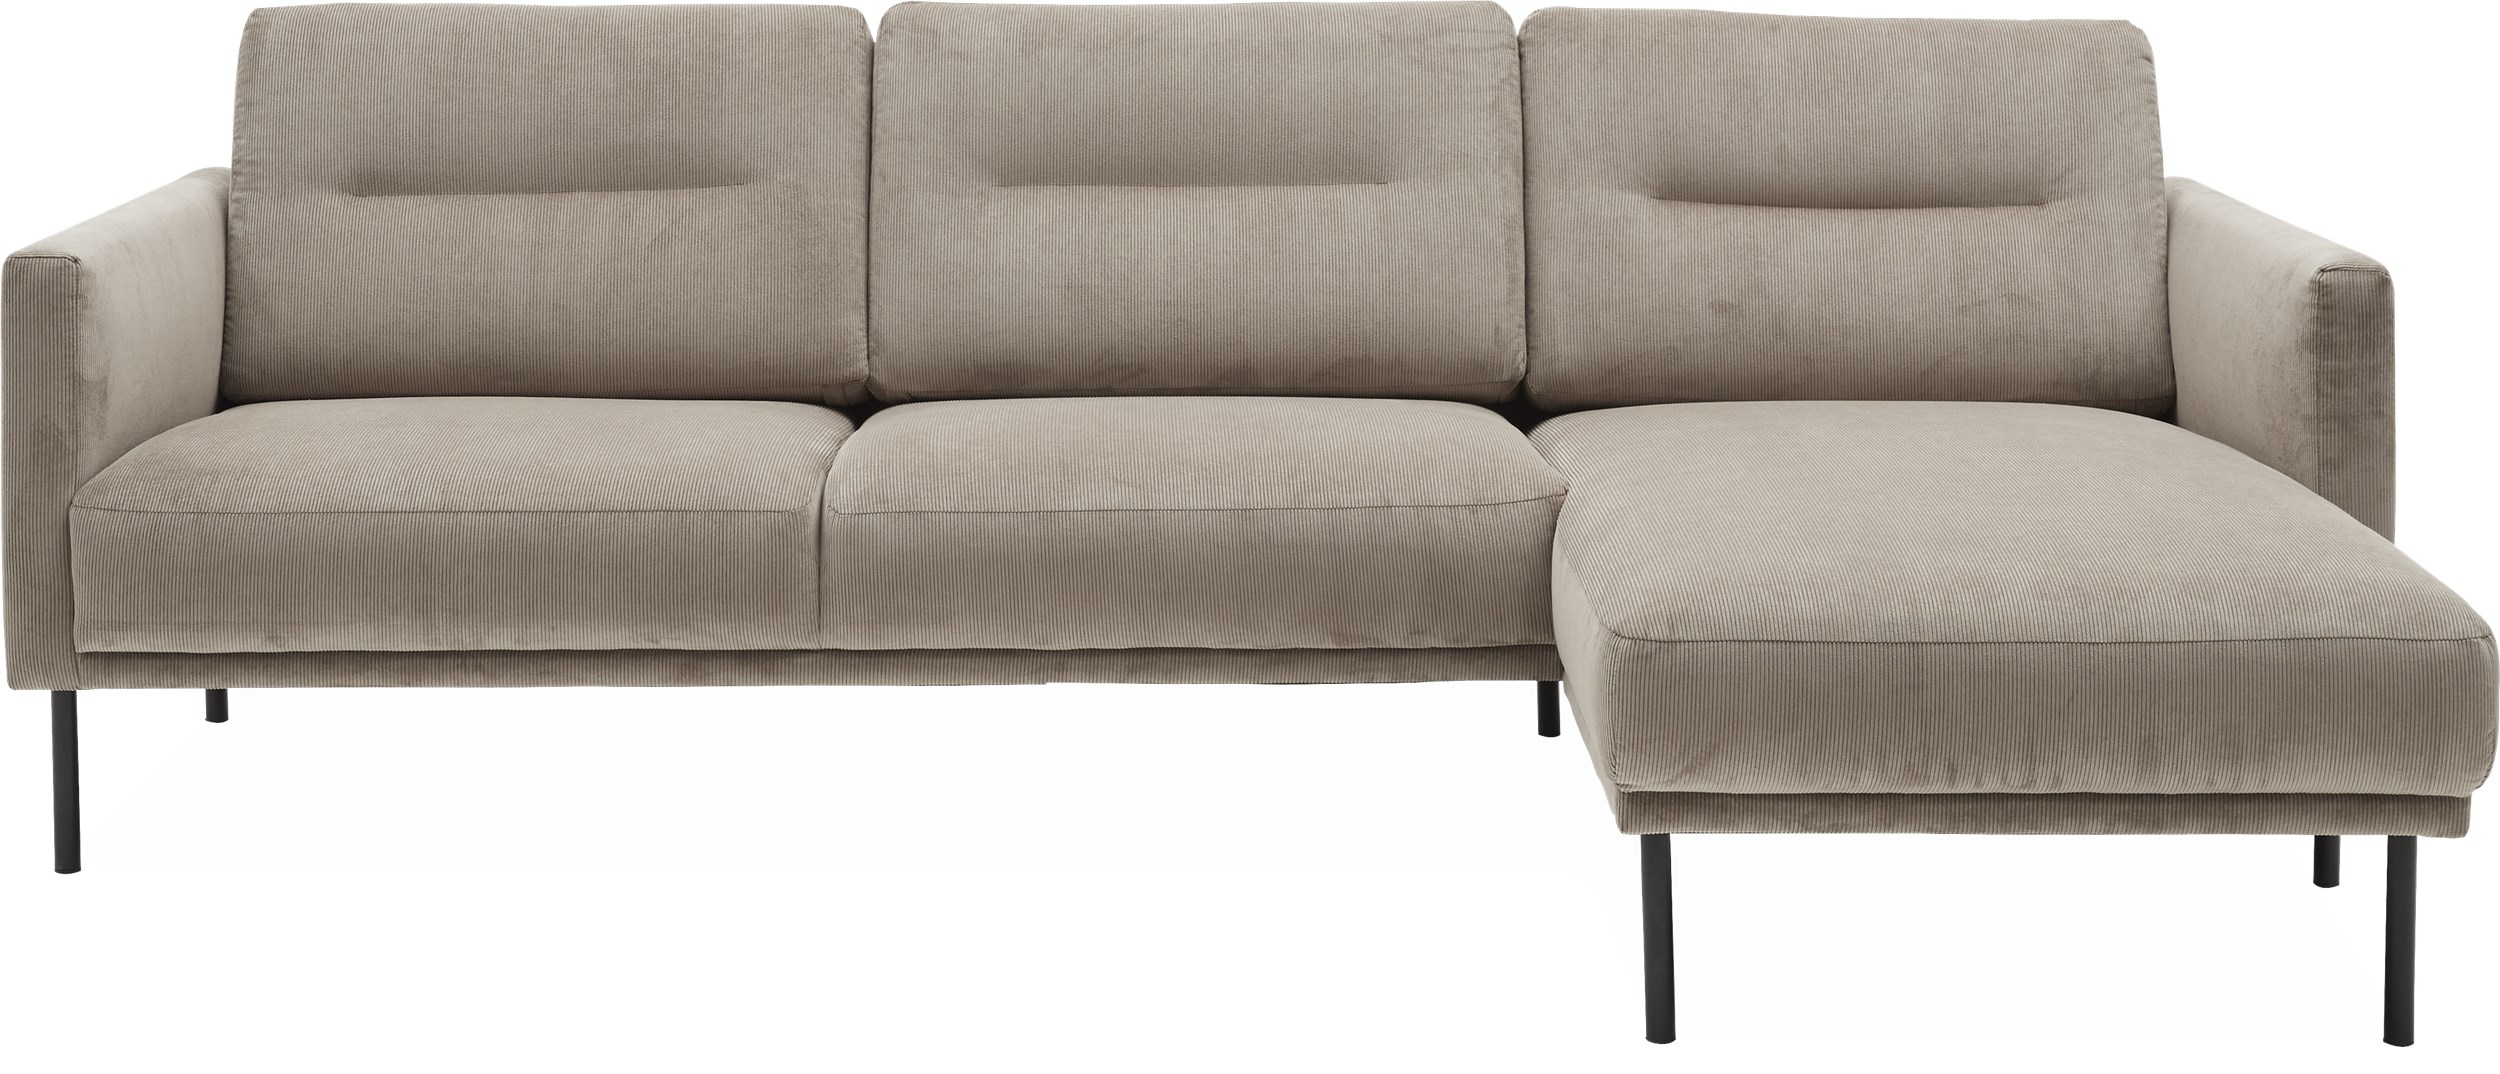 Larvik højrevendt sofa med chaiselong - Wave 70 Sand stof og ben i sortlakeret metal